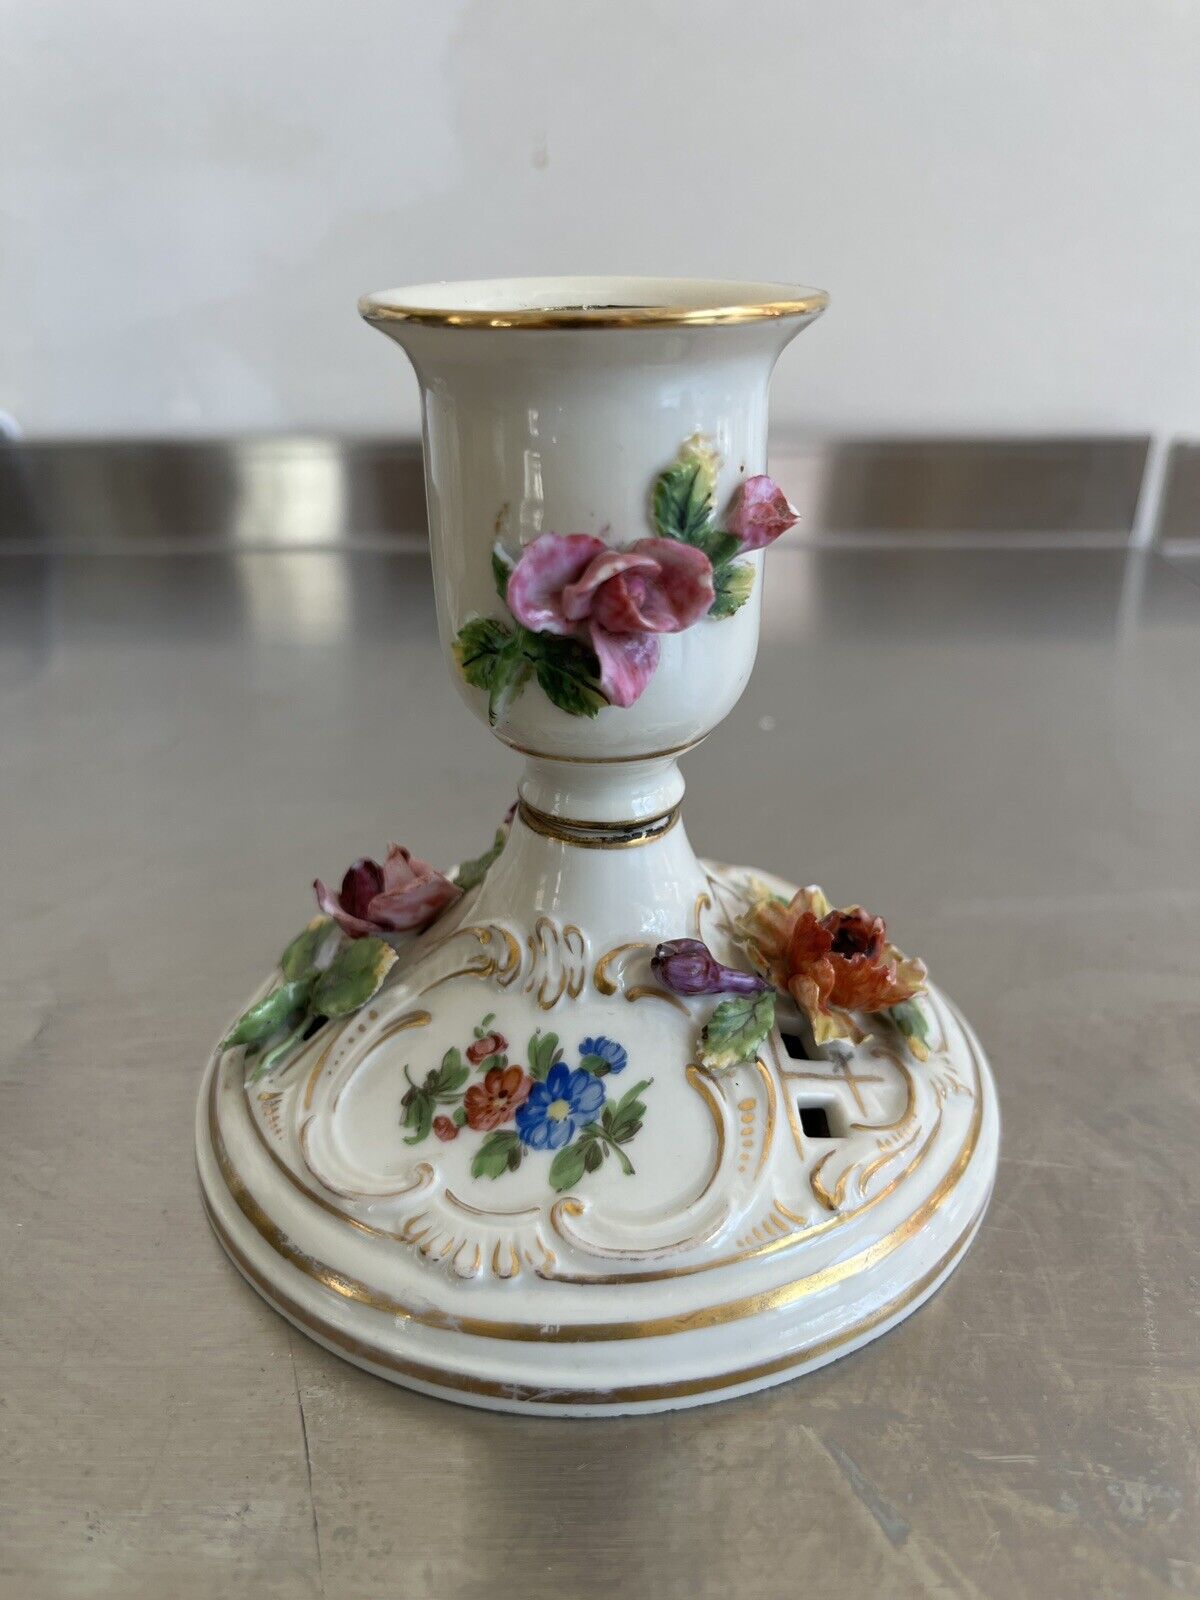 DRESDEN Saxony Vintage Porcelain Candle Holder 4 H x 4 D